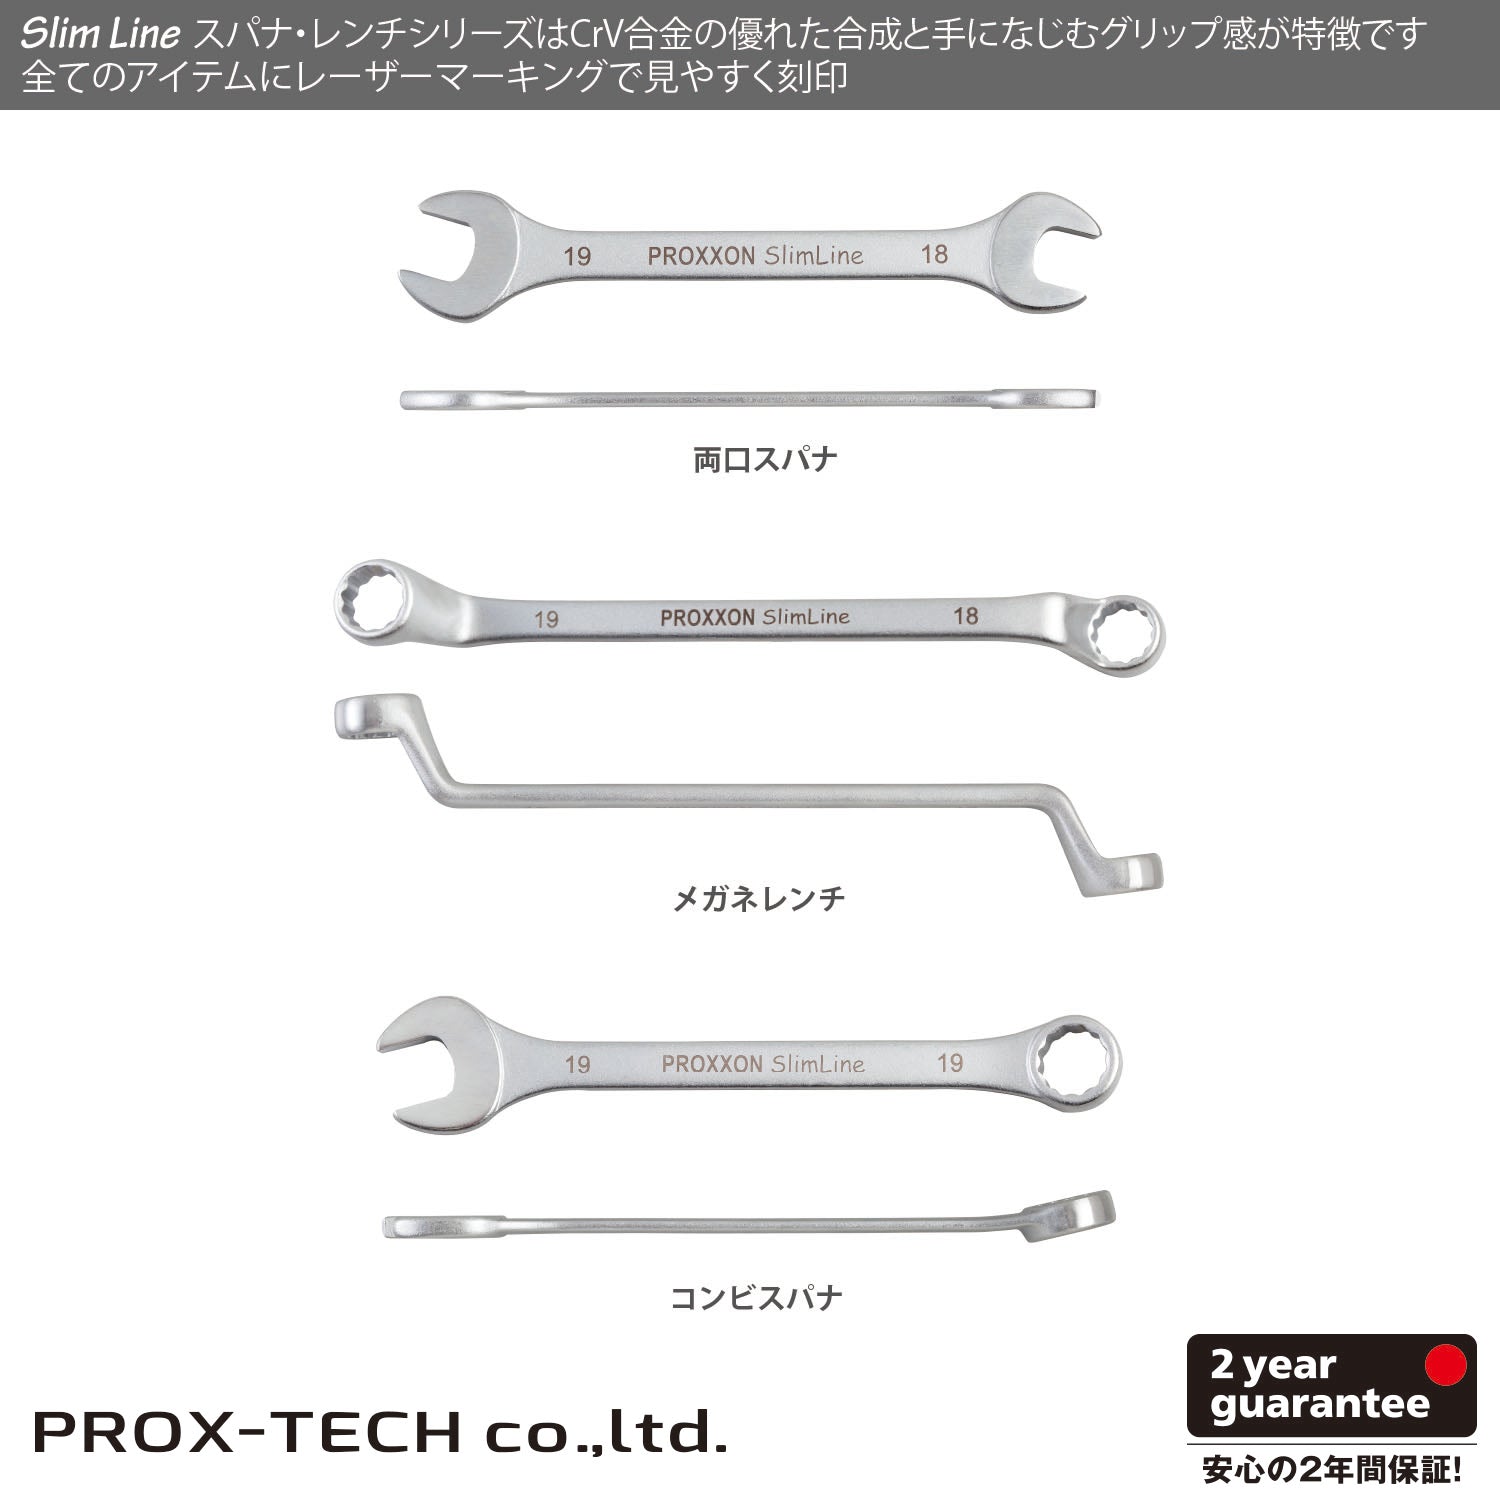 プロクソン Slim-Line メガネレンチ – PROX-TECH Co., Ltd.